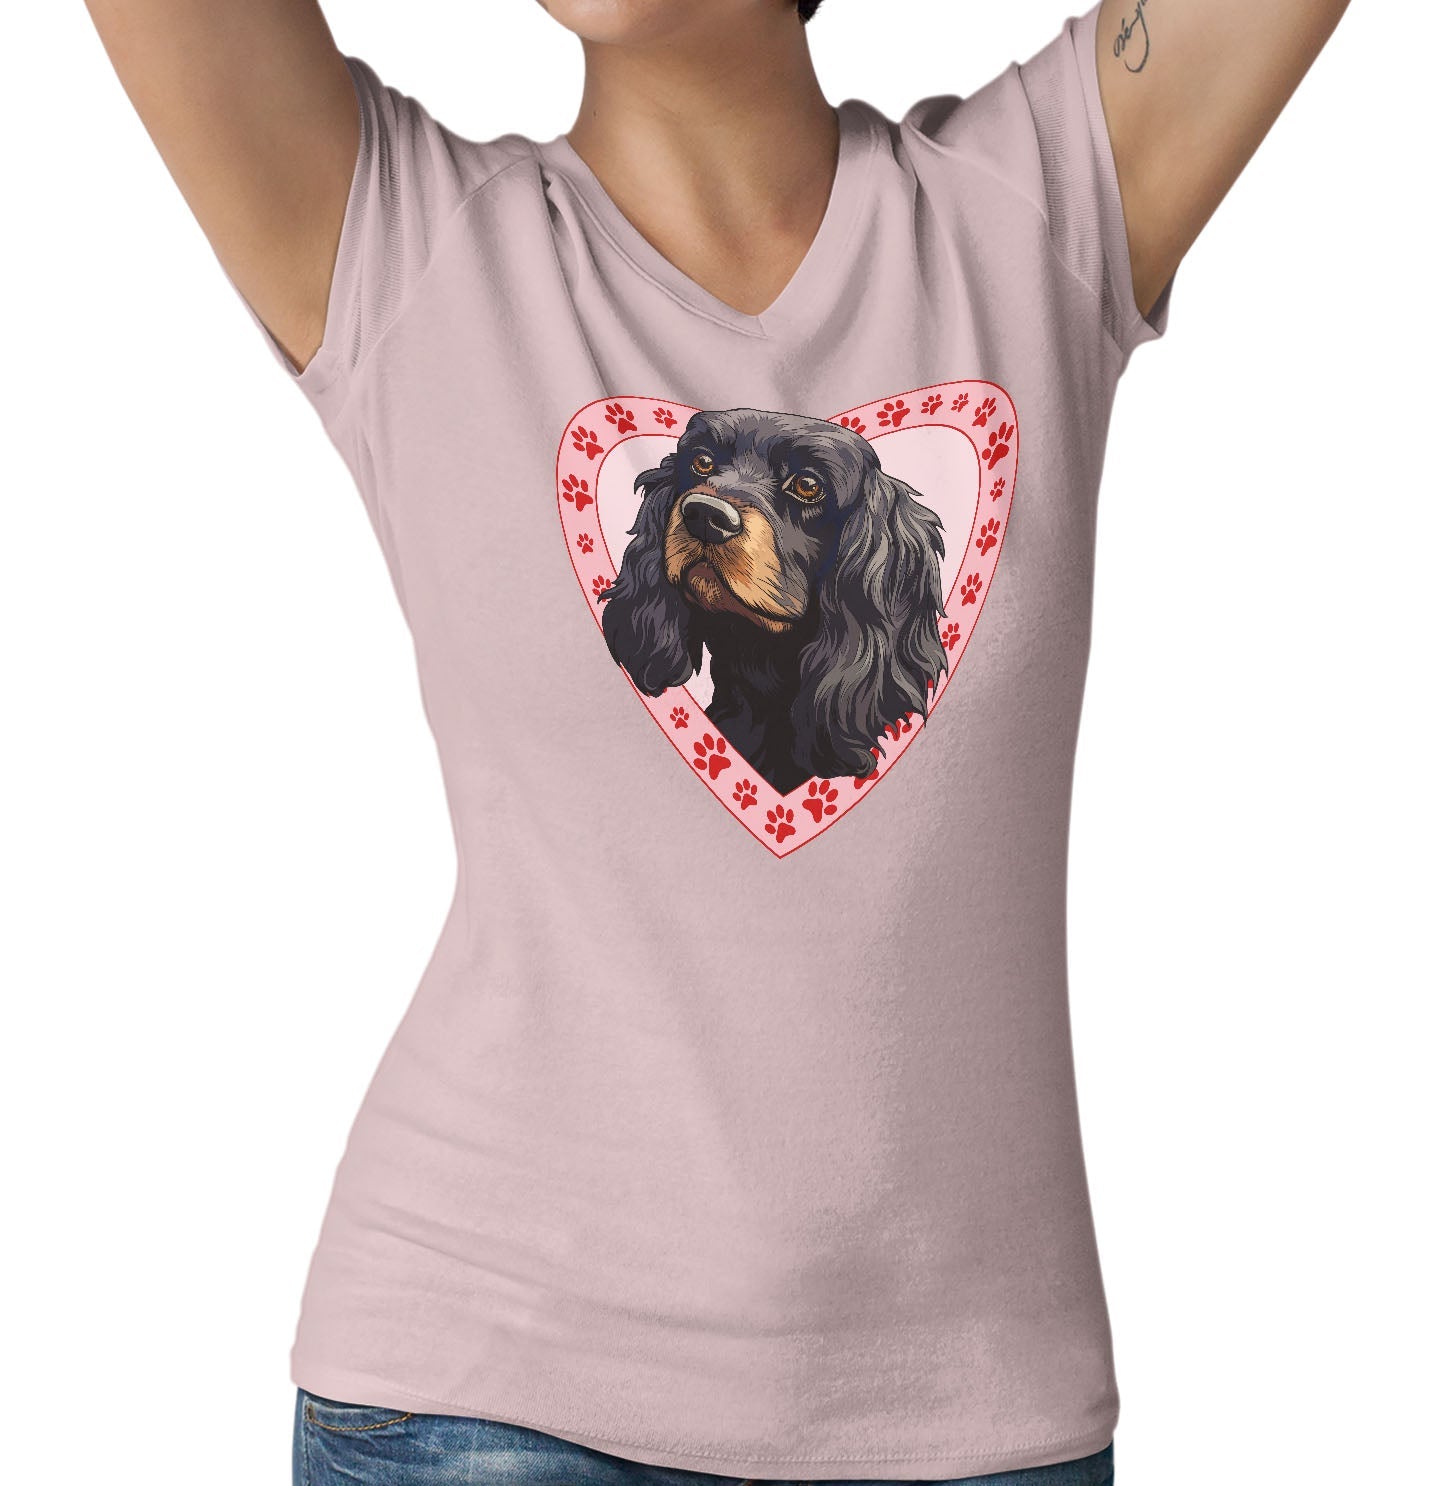 Cocker Spaniel (Black & Tan) Illustration In Heart - Women's V-Neck T-Shirt